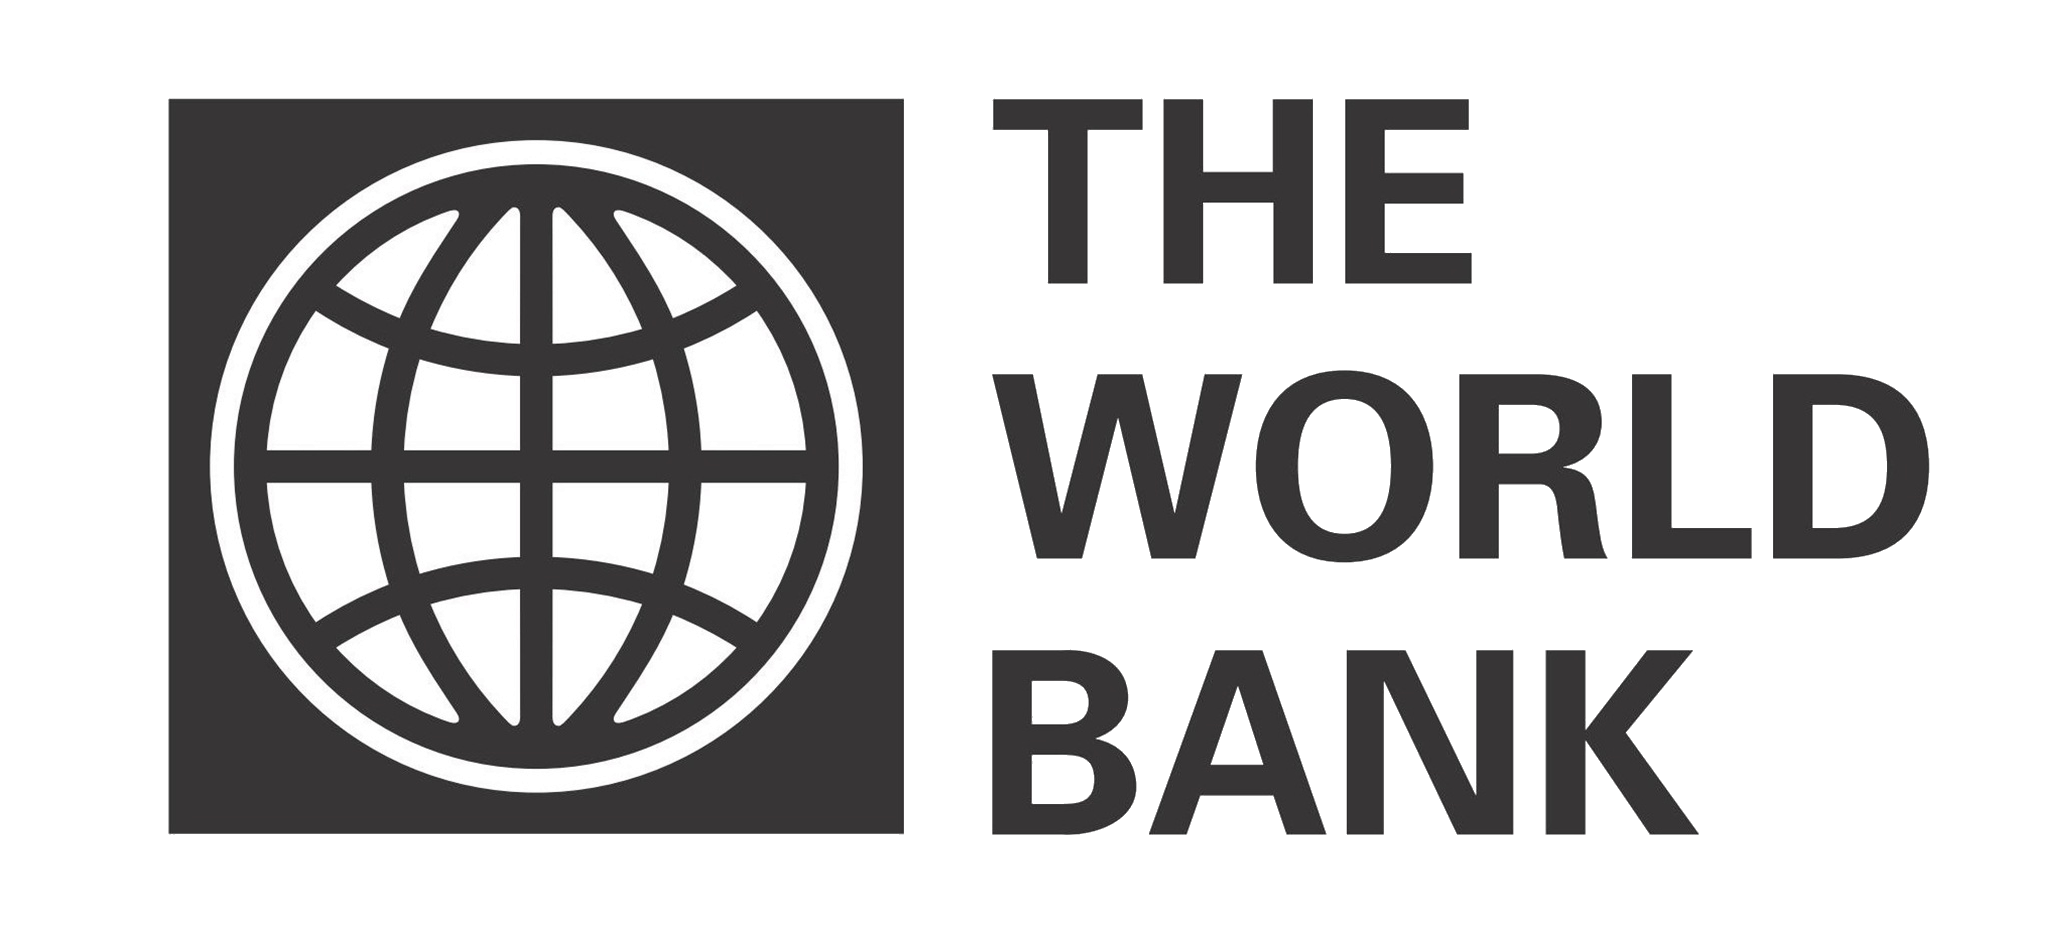 Фонд всемирный банк. Группа Всемирного банка эмблема. Всемирного банка (the World Bank). Всемирный банк США. Всемирный банк картинки.